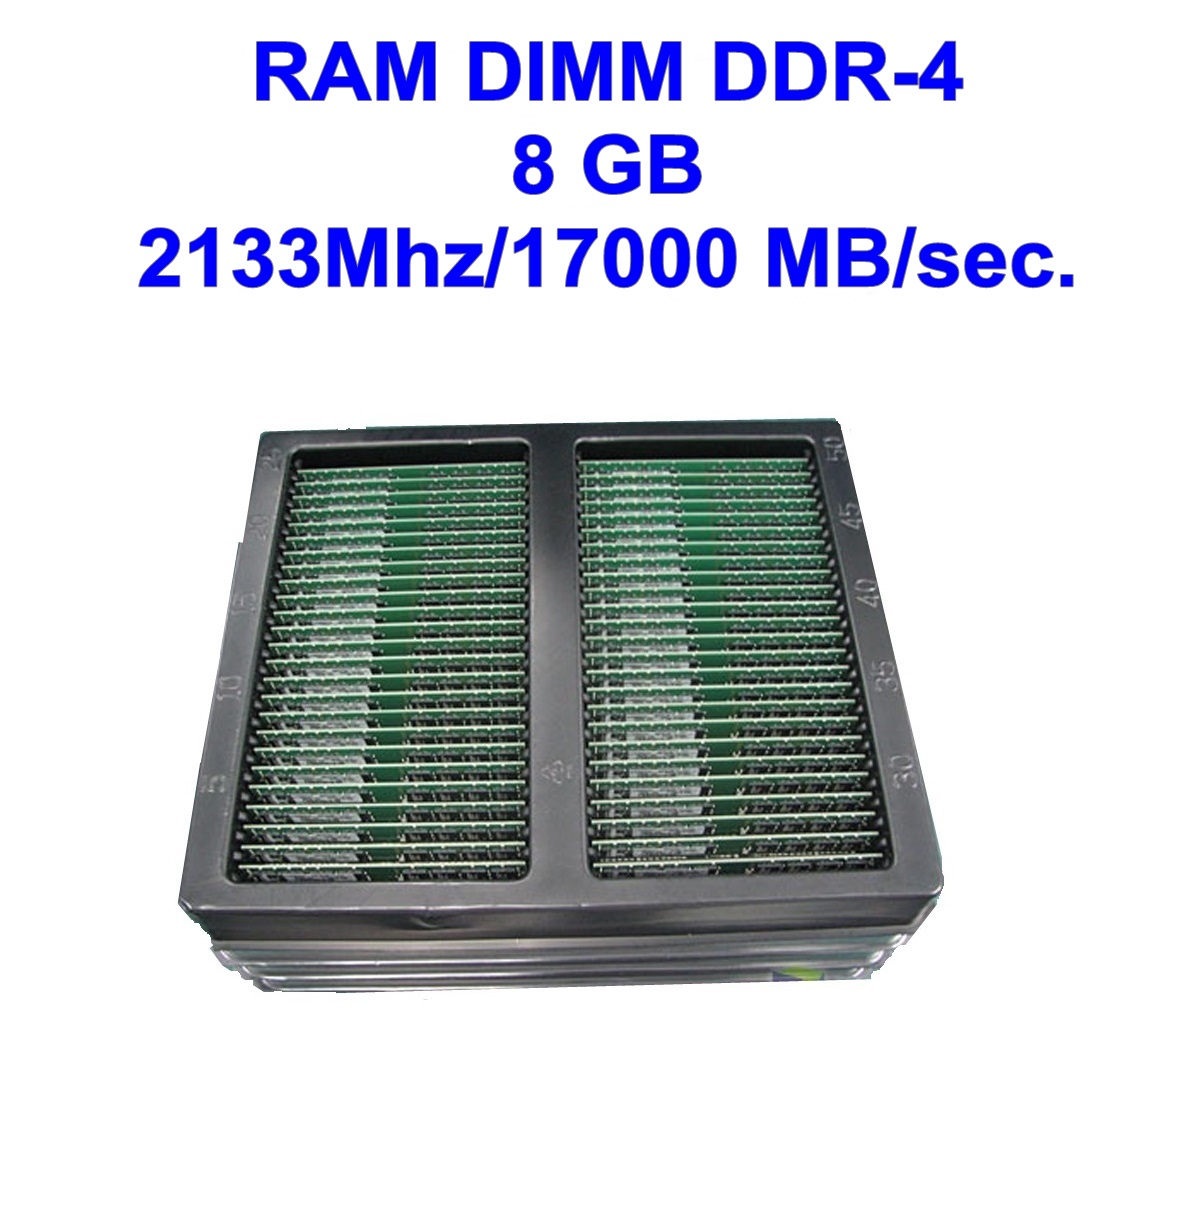 DIMM DDR-4 8 GB 2133Mhz/17000 MB/sec.